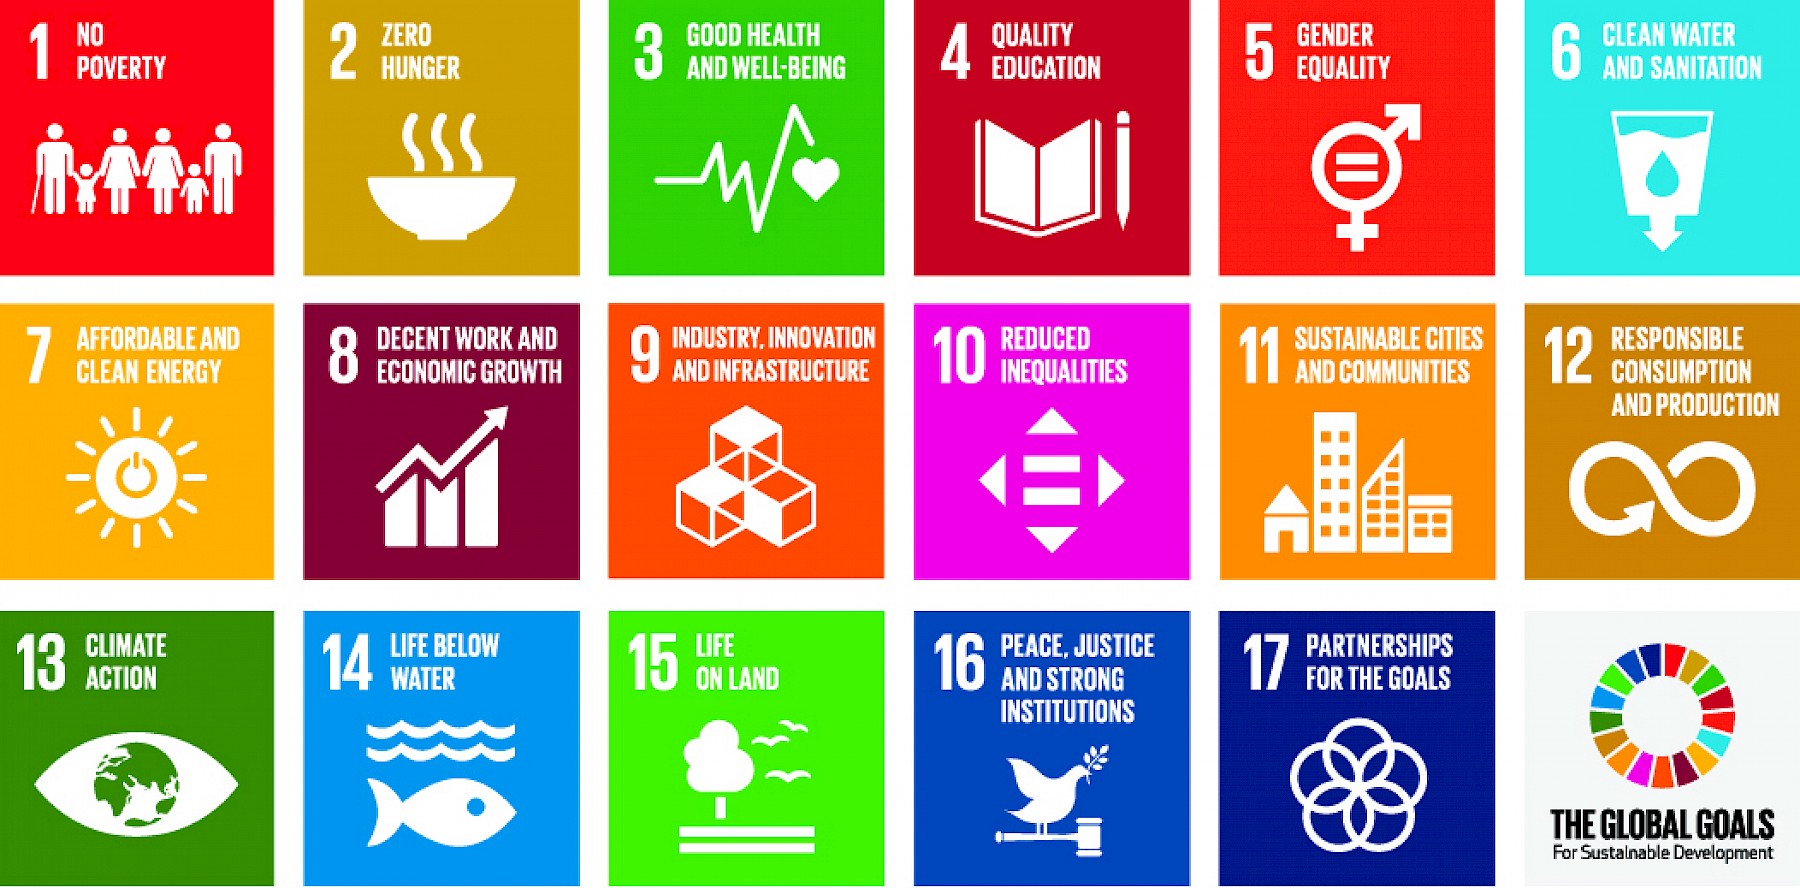 Agenda 2030: FNs bærekraftsmål er verdens felles arbeidsplan for å utrydde fattigdom, bekjempe ulikhet og stoppe klimaendringene innen 2030.